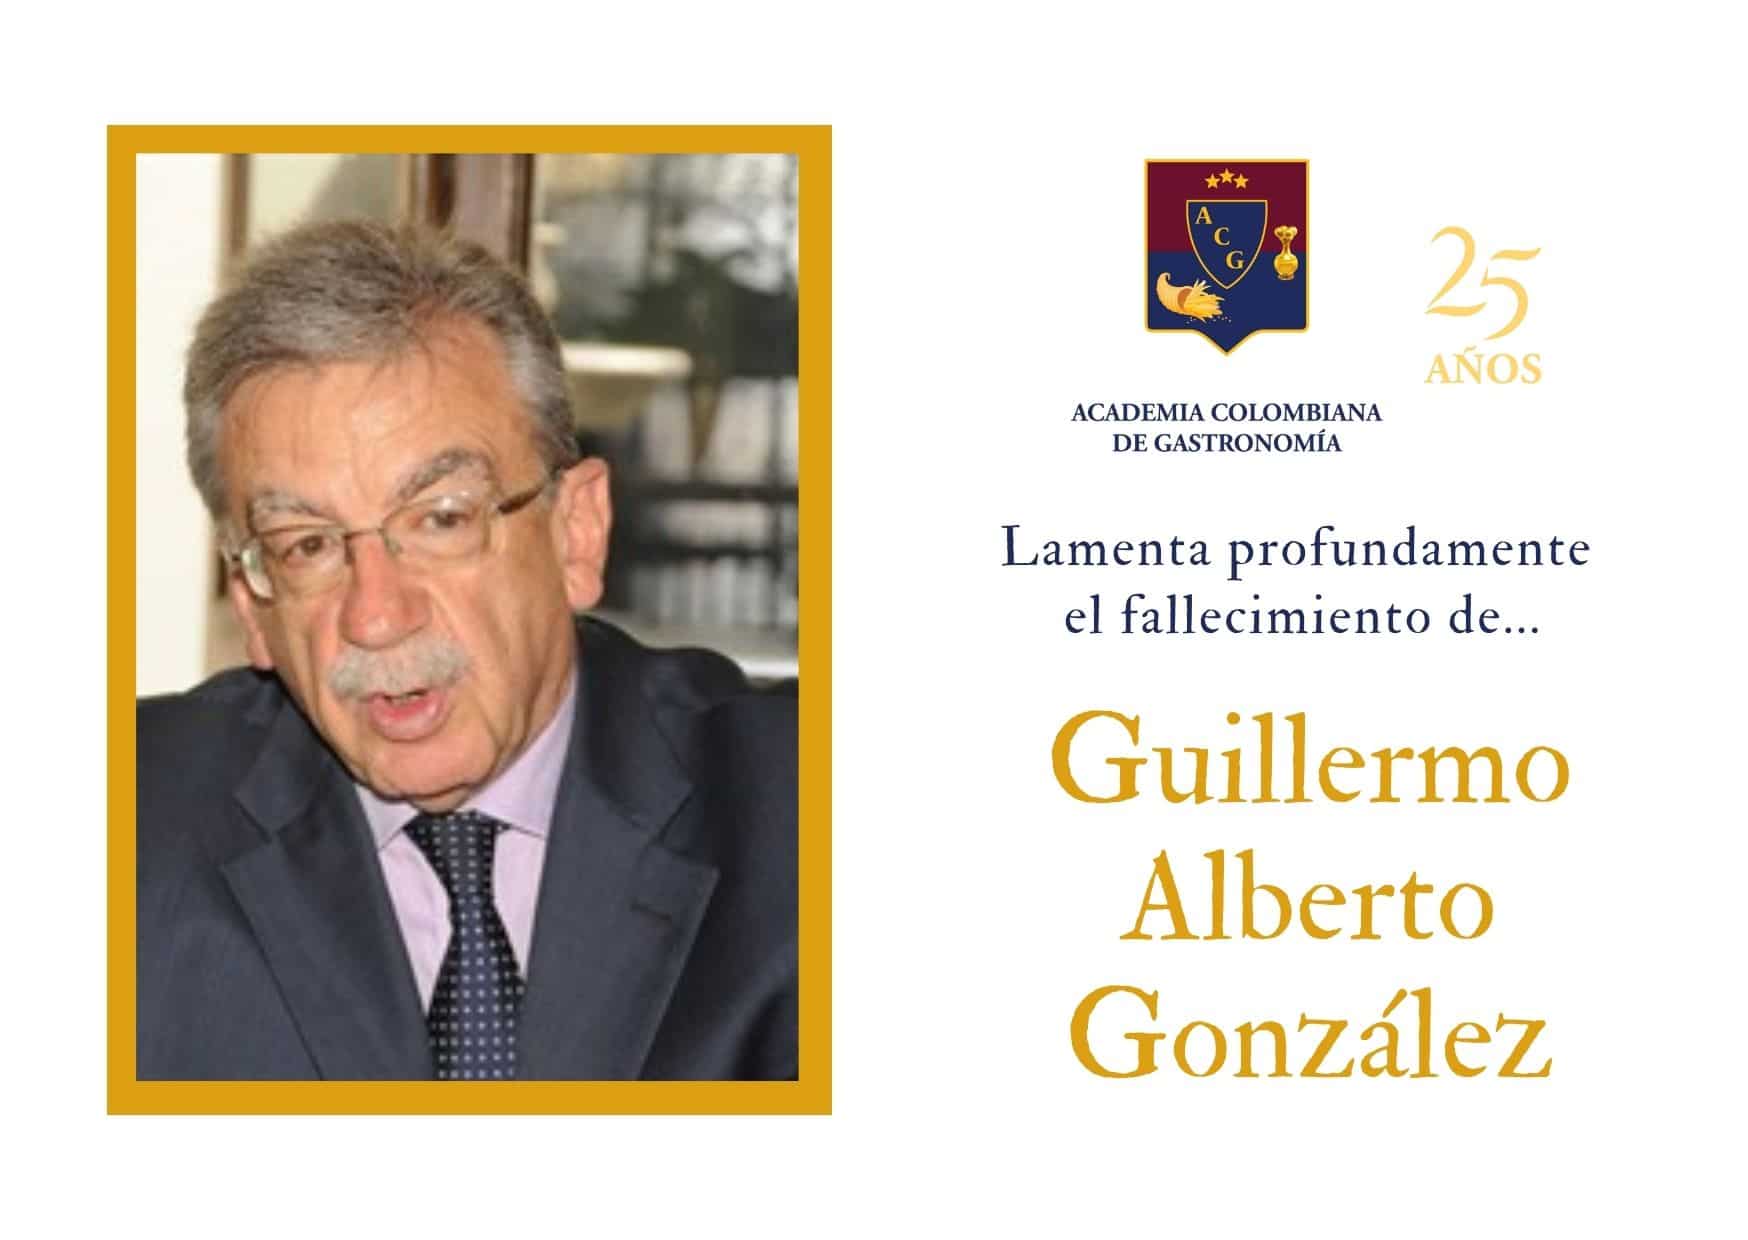 Guillermo Alberto González